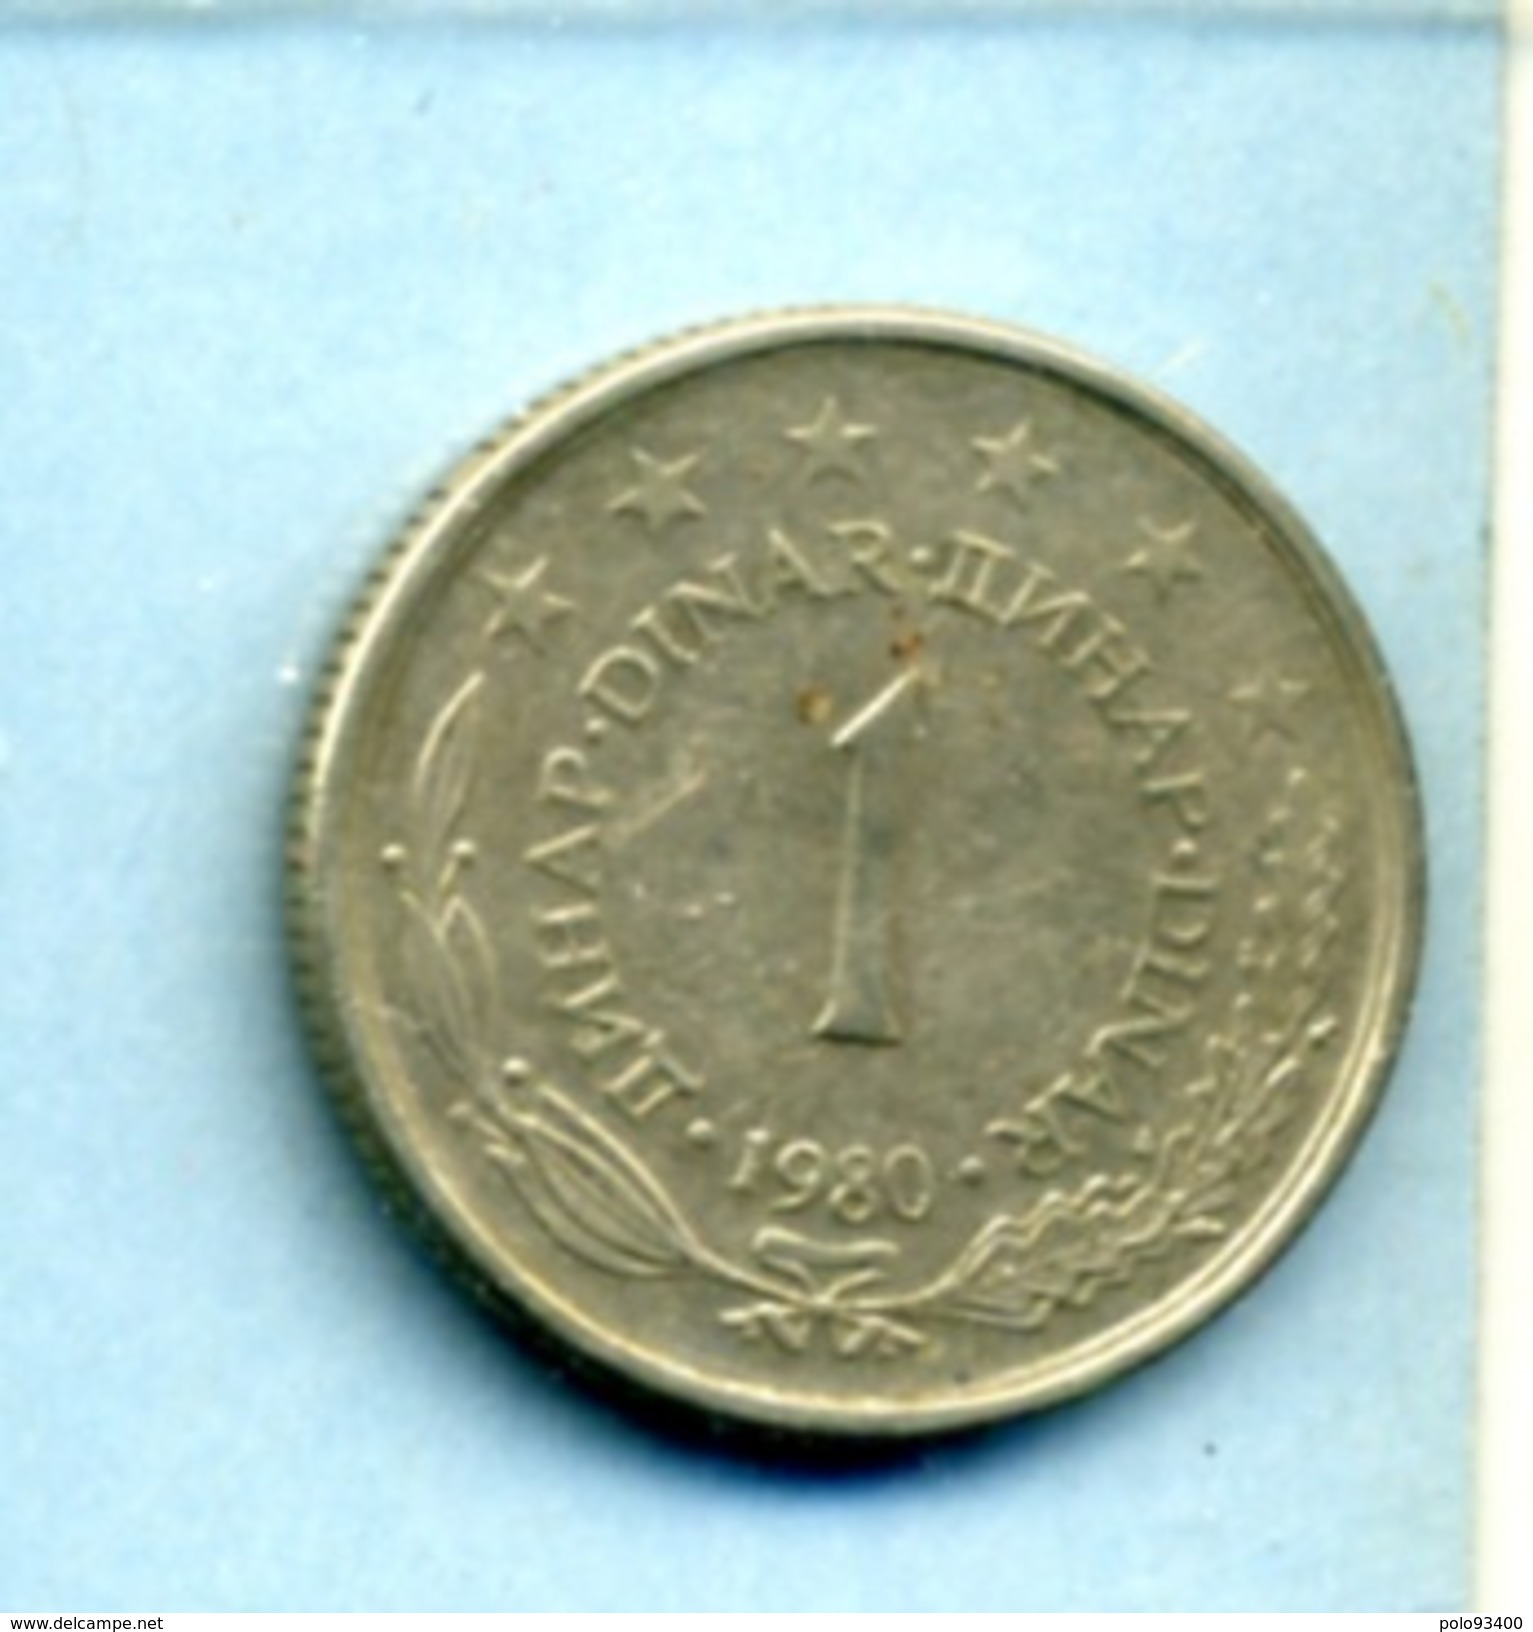 1980 1 DINAR - Yougoslavie